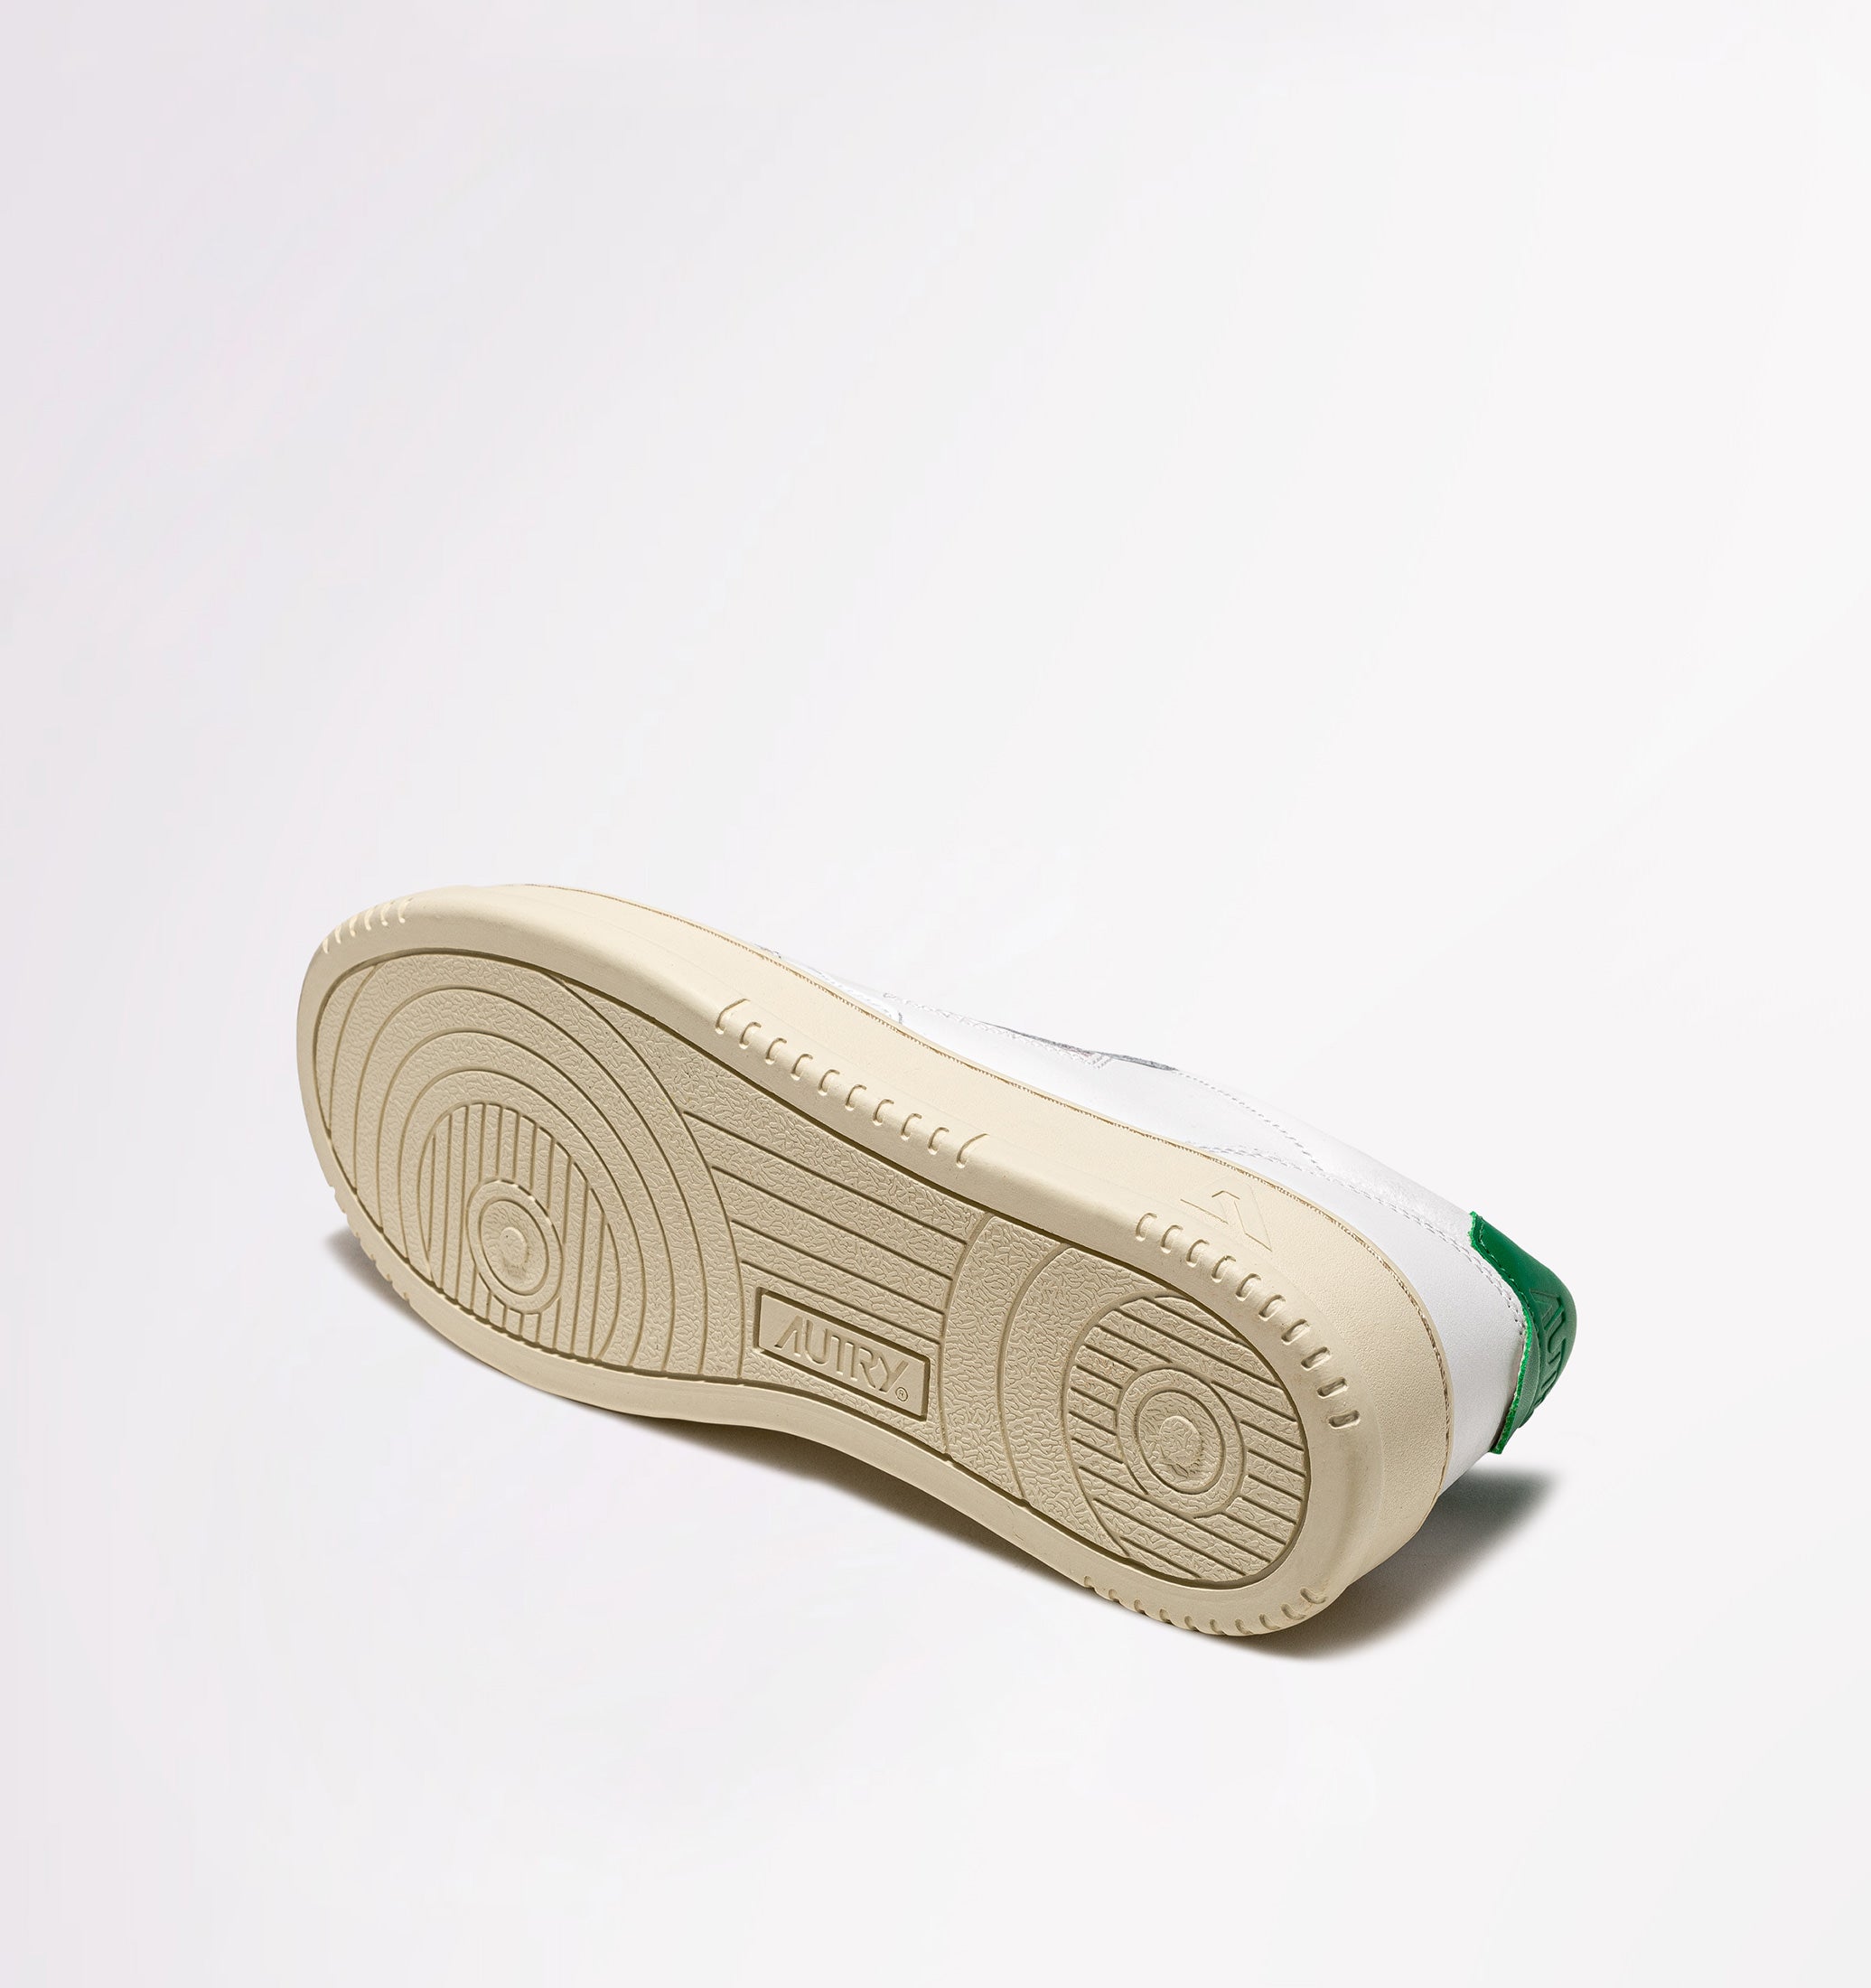 Medalist Sneaker - White / Green